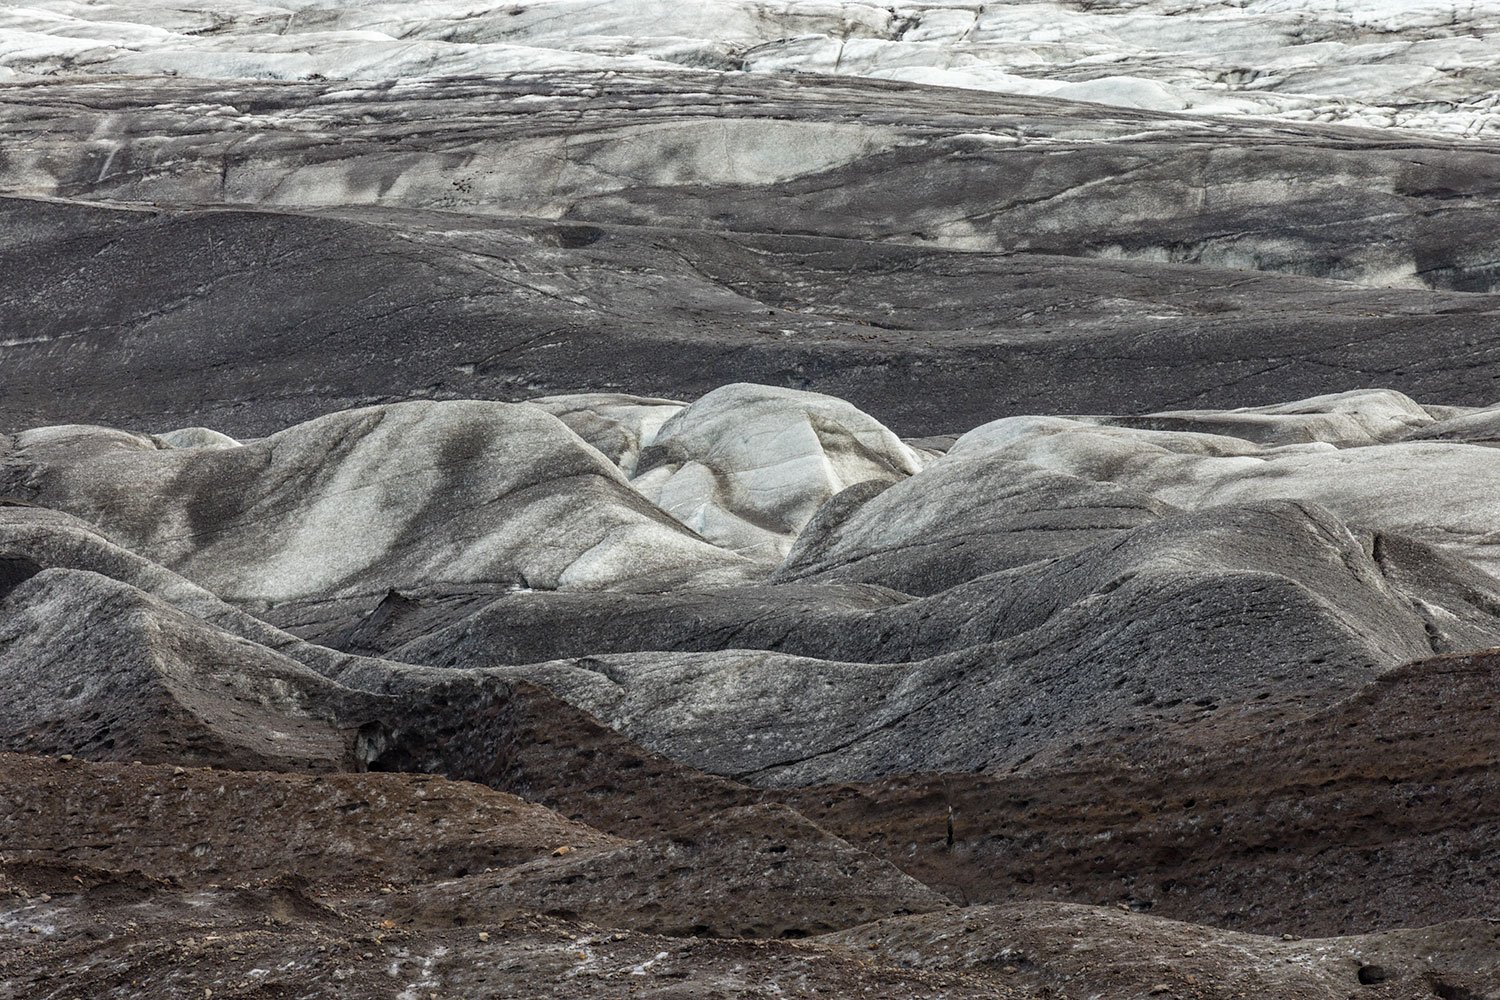 Volcanic Dust Covered Glacier. Svinafellsjokull, Iceland, 2022